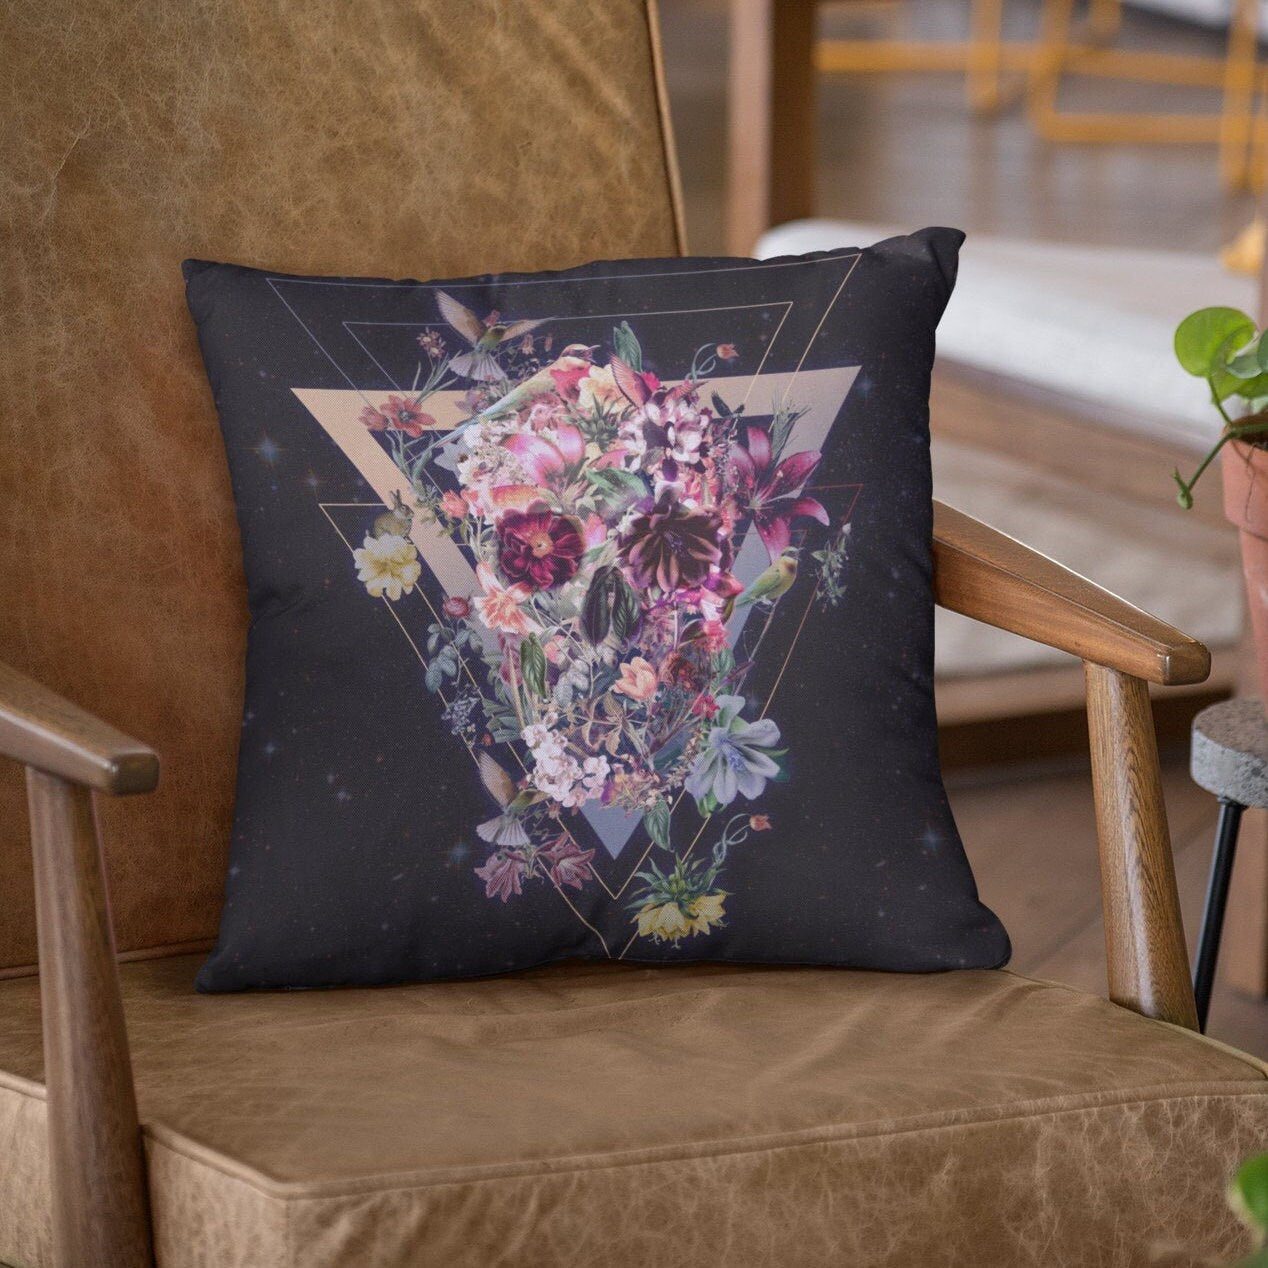 Floral Skull Throw Pillow, Boho Skull Spun Polyester Square Pillow, Gothic Sugar Skull Home Decor, Black Flower Skull Pillow Decor Gift